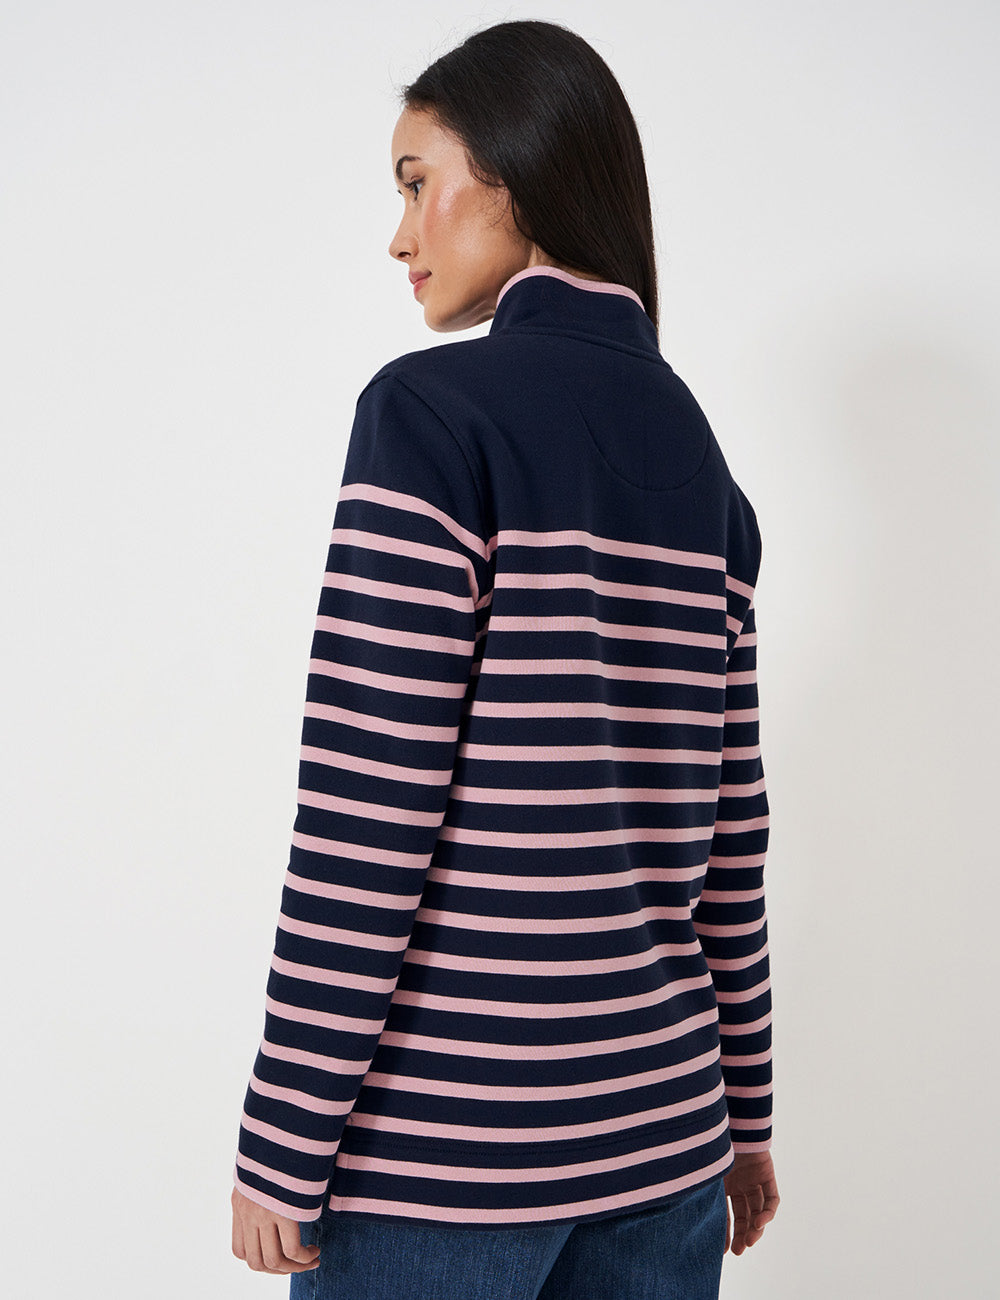 Crew Clothing 1/2 Button Sweatshirt - Dark Navy/Pink Stripe